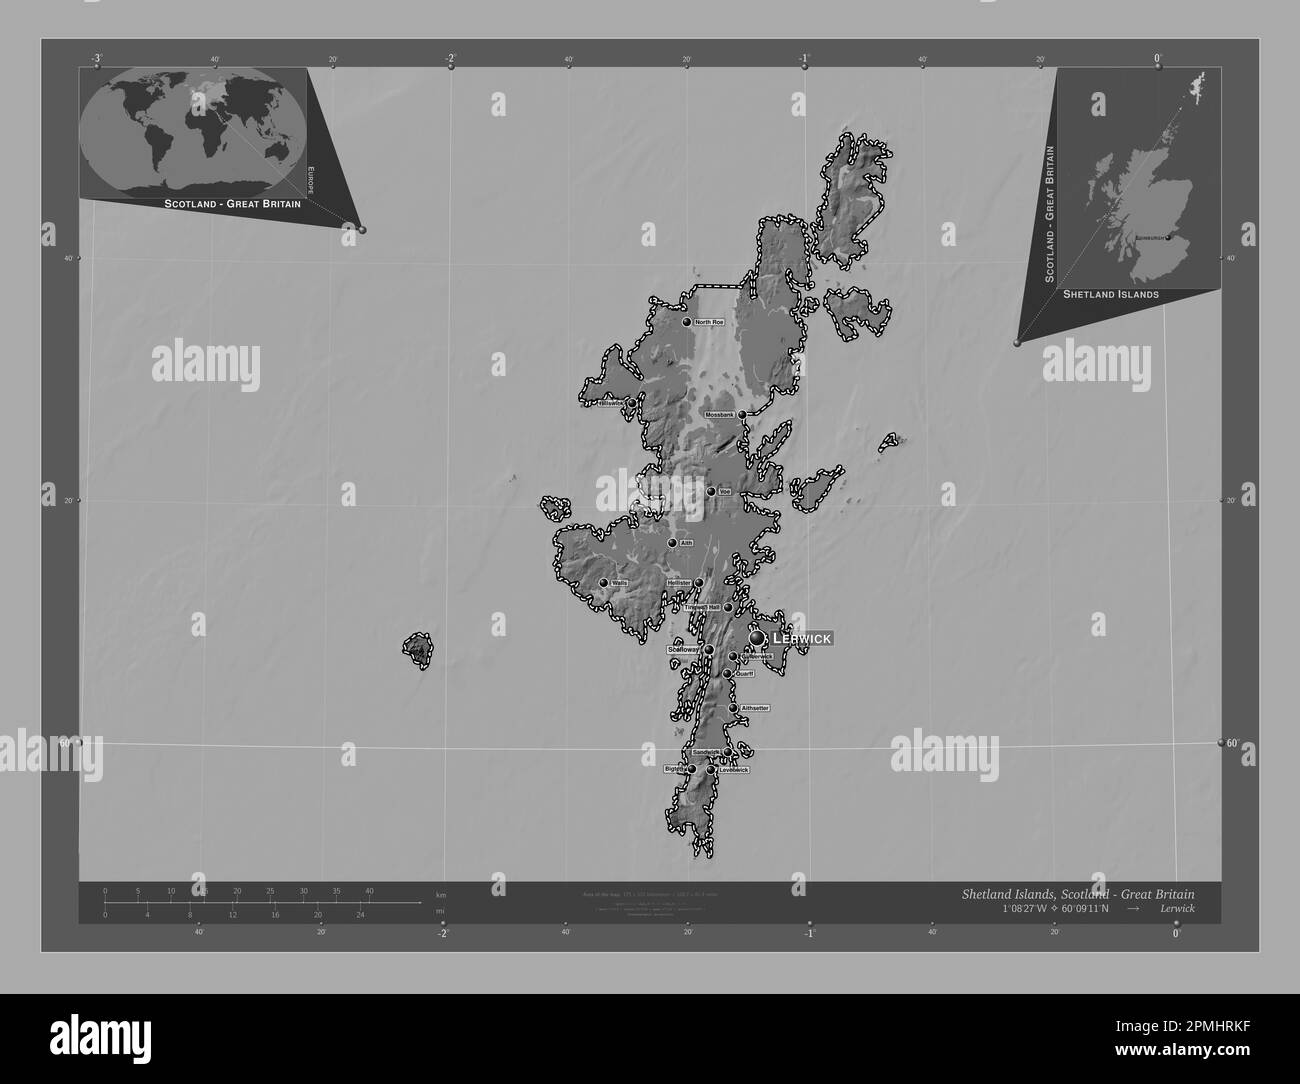 Shetland Islands, Region Schottland – Großbritannien. Bilevel-Höhenkarte mit Seen und Flüssen. Standorte und Namen der wichtigsten Städte der Region. Stockfoto